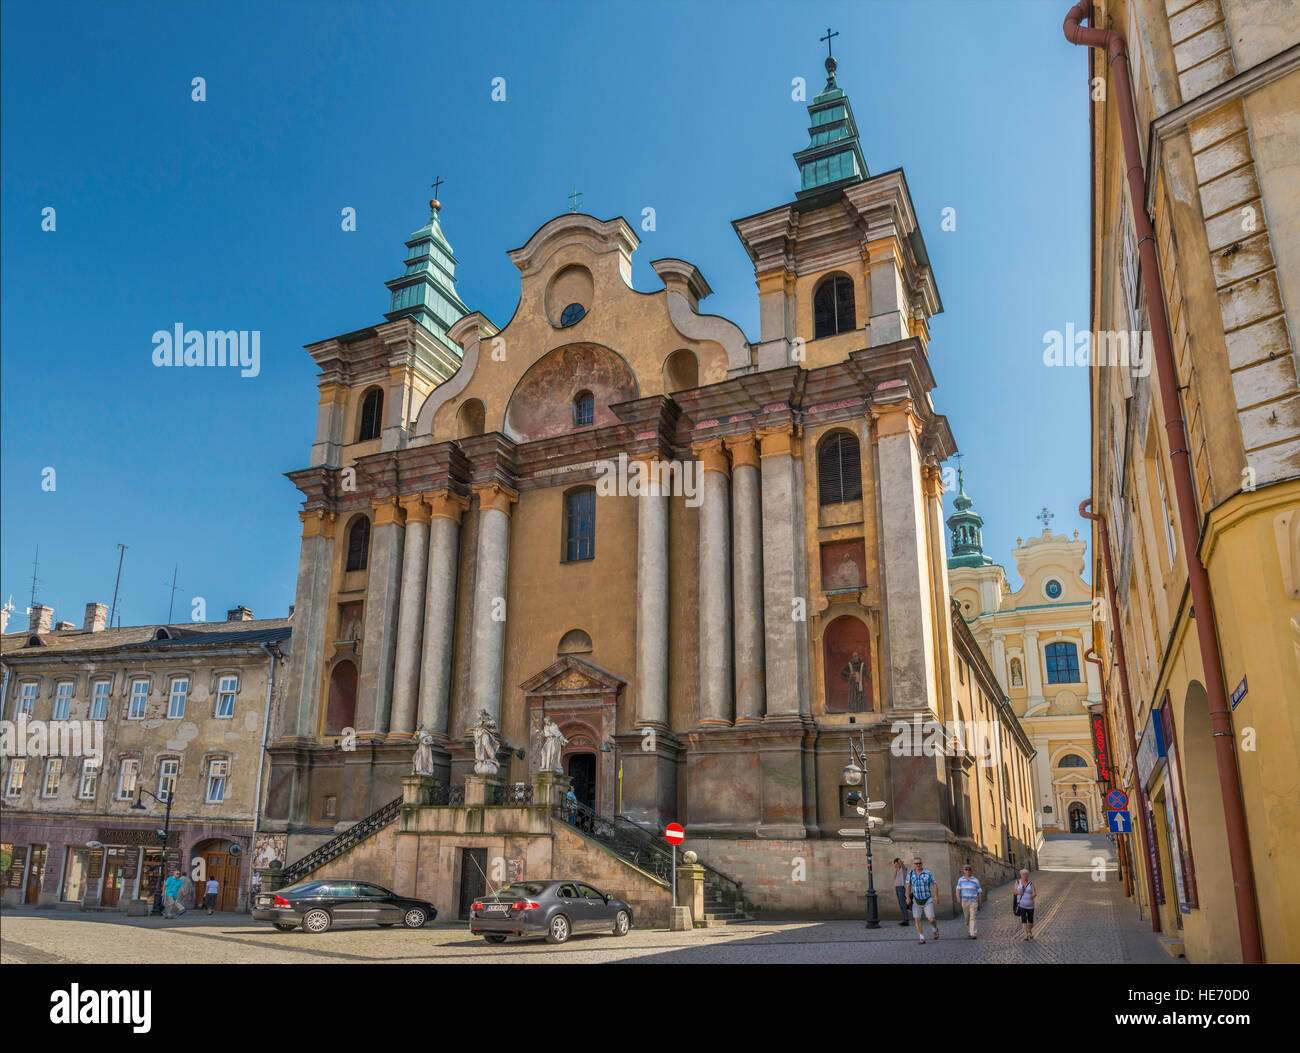 L'Église Franciscaine catholique romaine de St Mary Magdalene, 18e siècle, la cathédrale grecque-catholique dans la distance, dans Przemysl, Pologne Banque D'Images